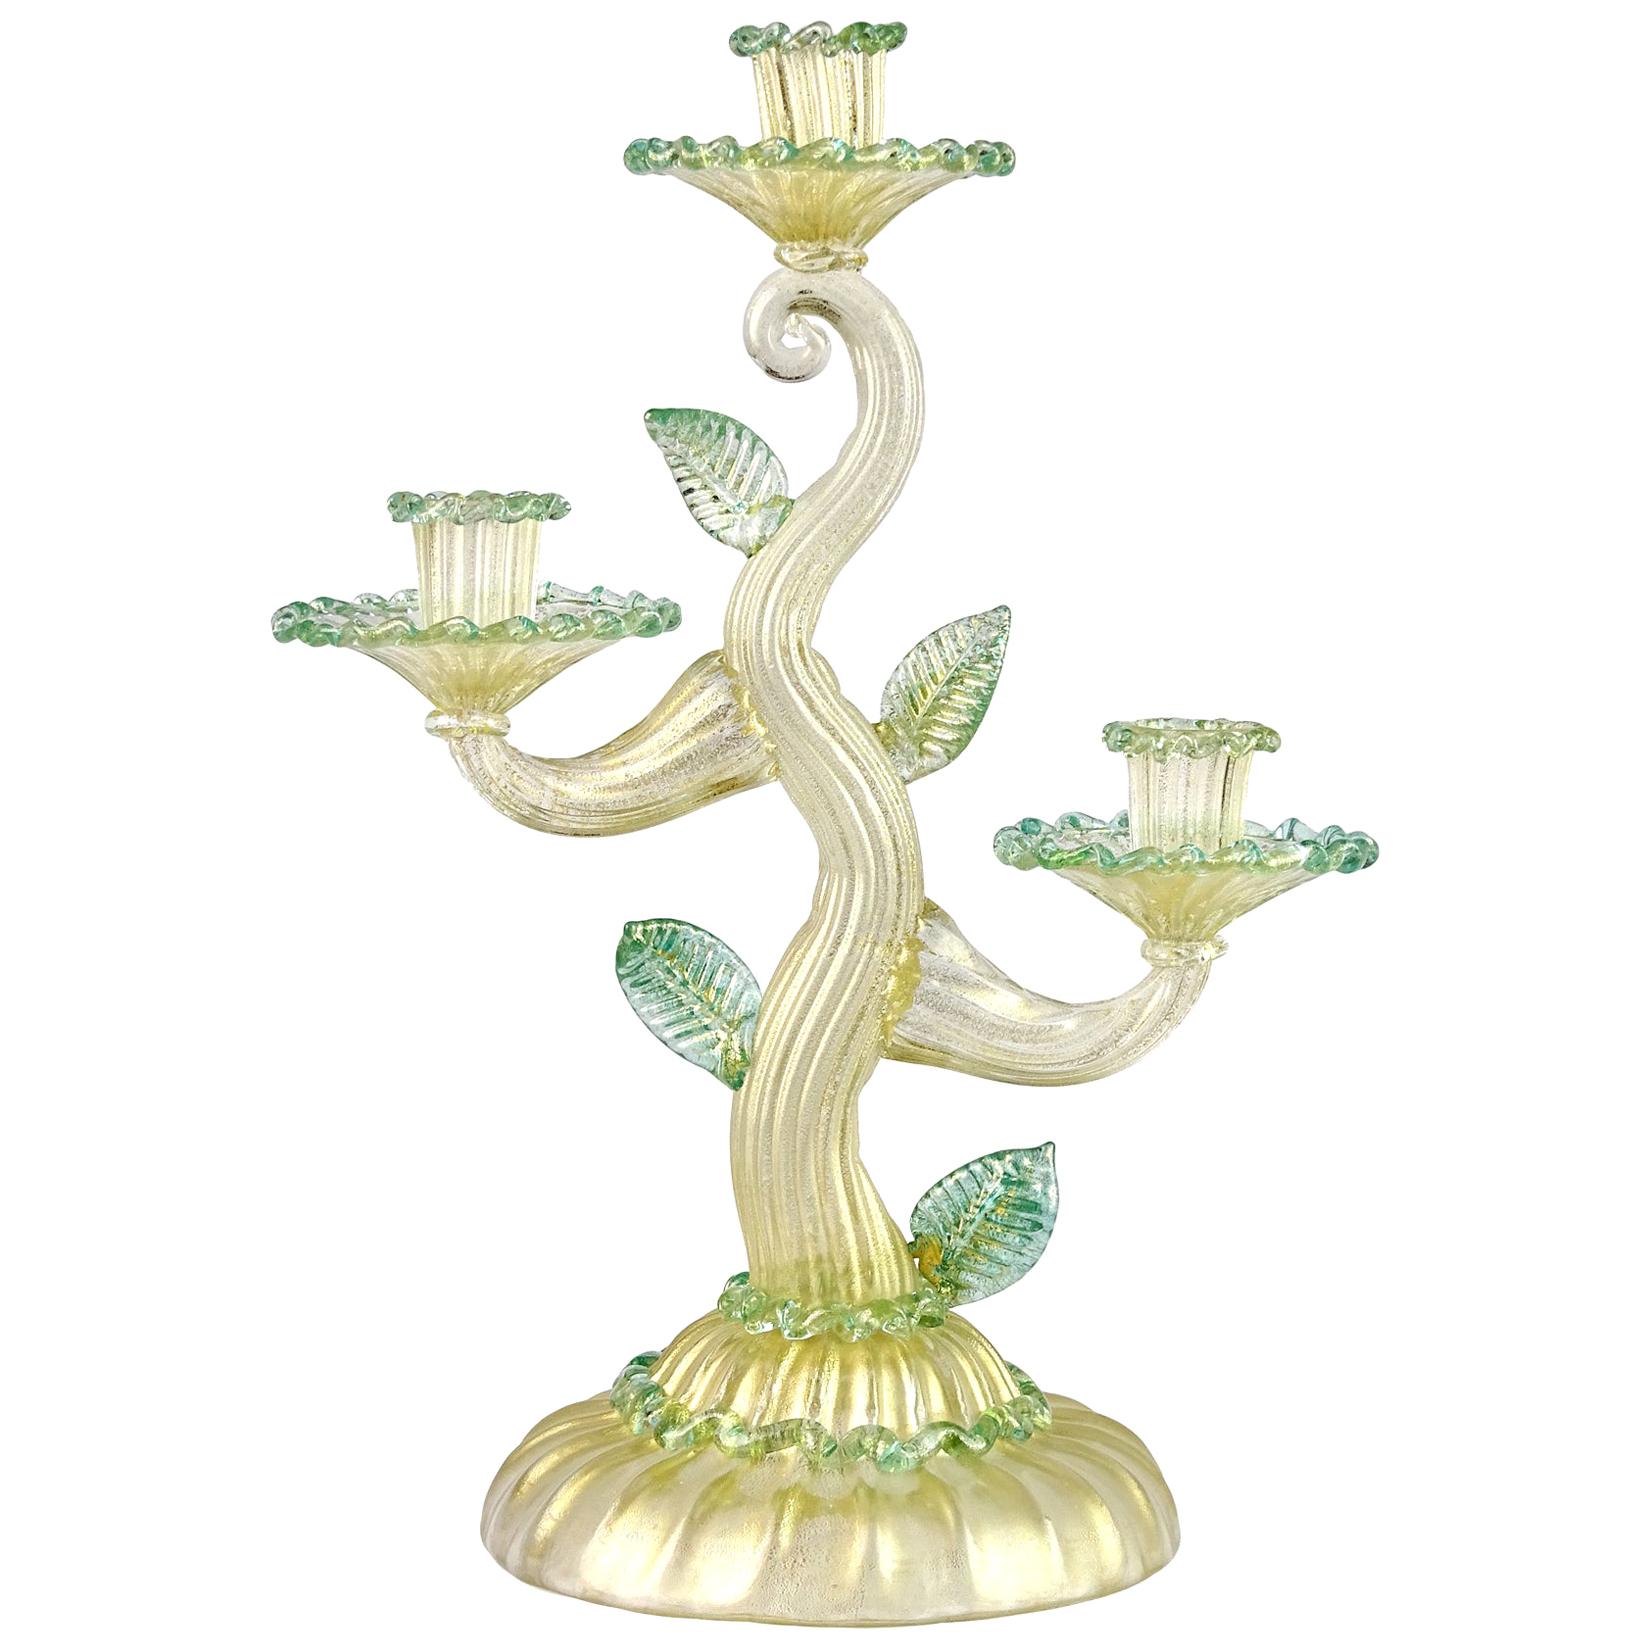 Barovier Toso Murano Gold Flecks Green Italian Art Glass Candelabra Candleholder For Sale